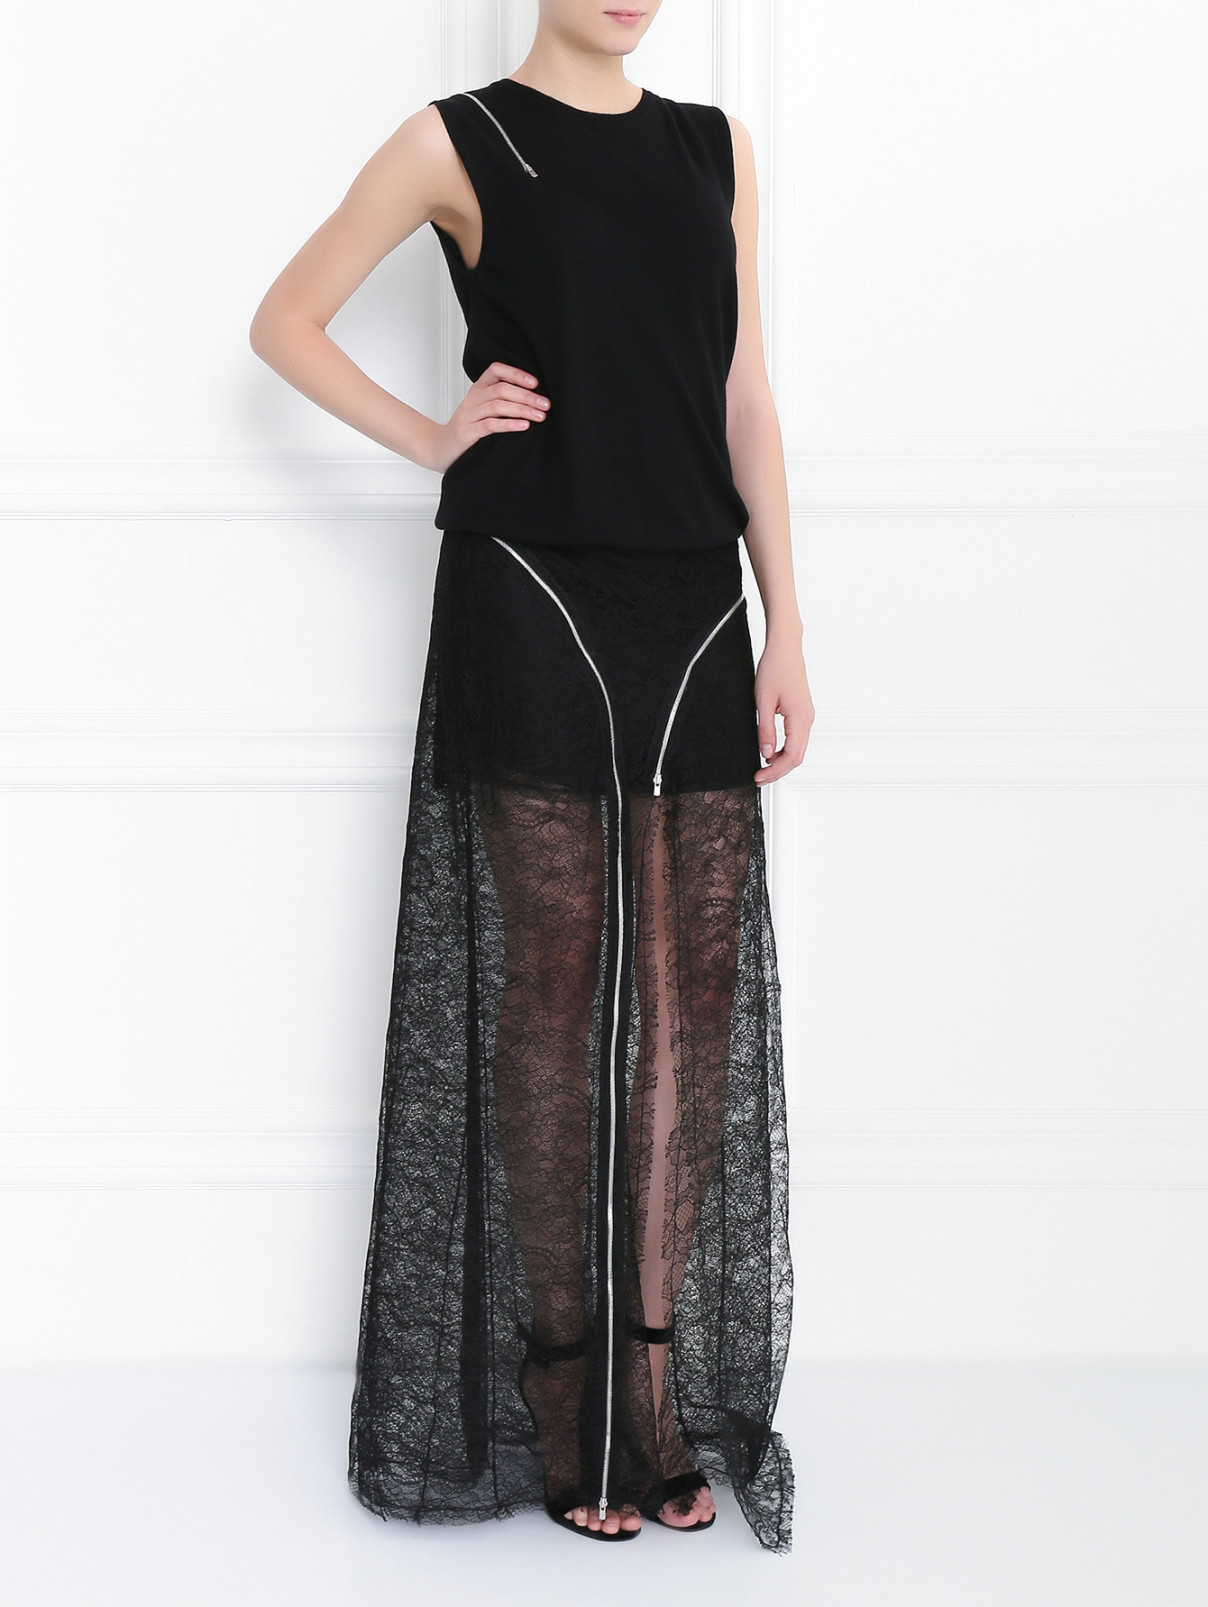 Платье-макси с кружевом и декоративными молниями Jay Ahr  –  Модель Общий вид  – Цвет:  Черный